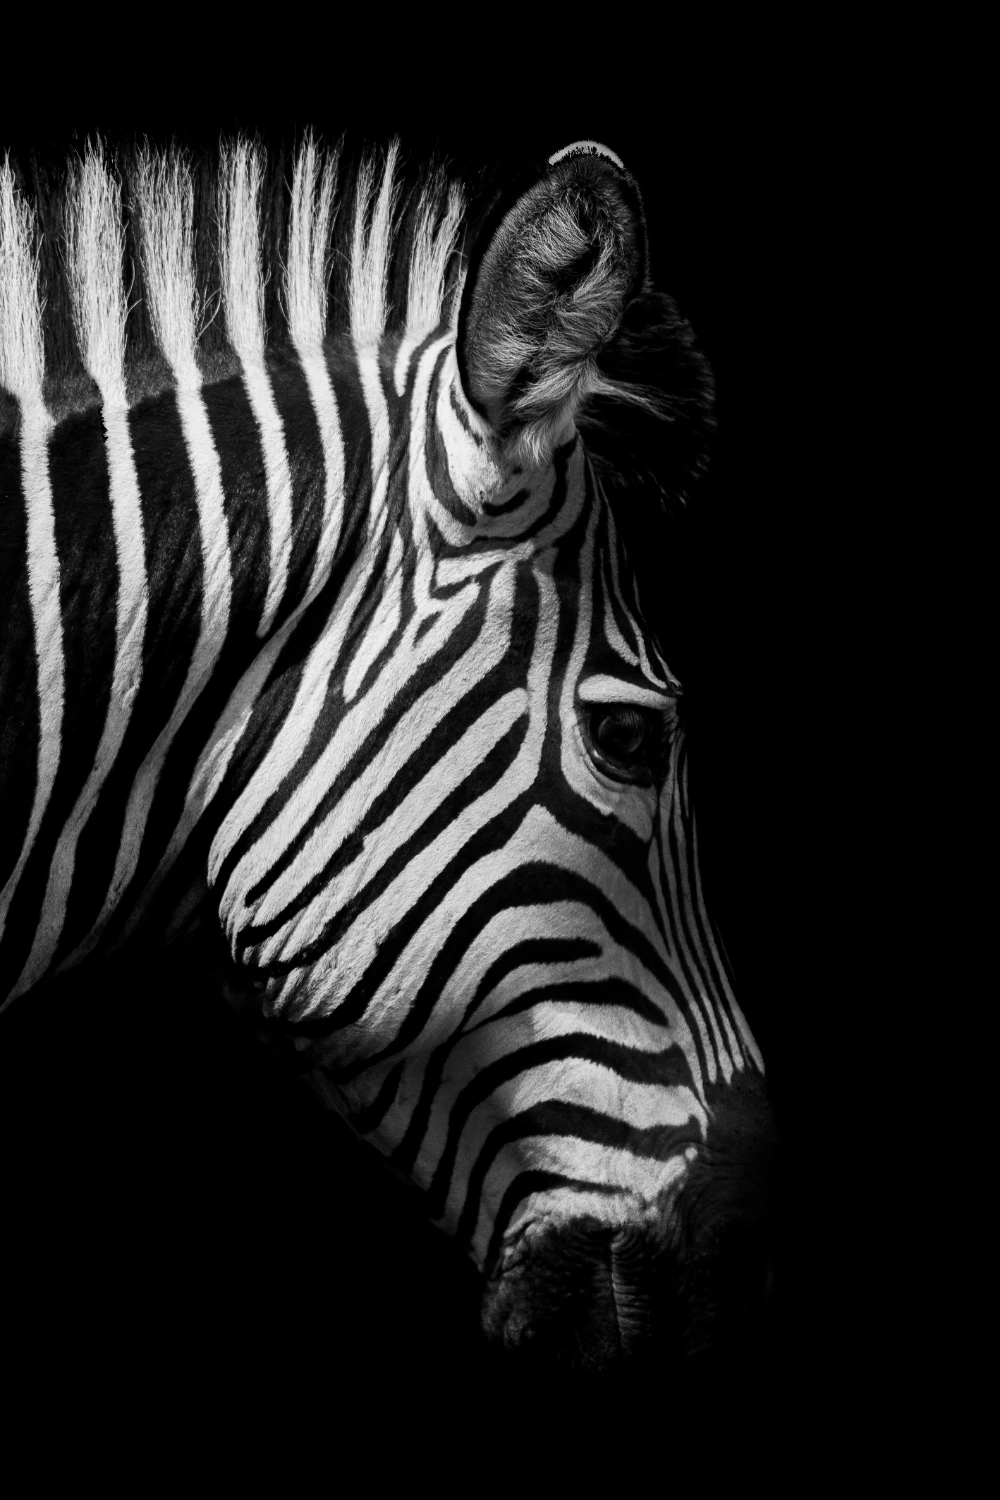 Современные телефоны на Windows Африка дикая природа животные черный белый холст картина плакат печать стены Искусство картина для гостиной домашний декор - Цвет: zebra